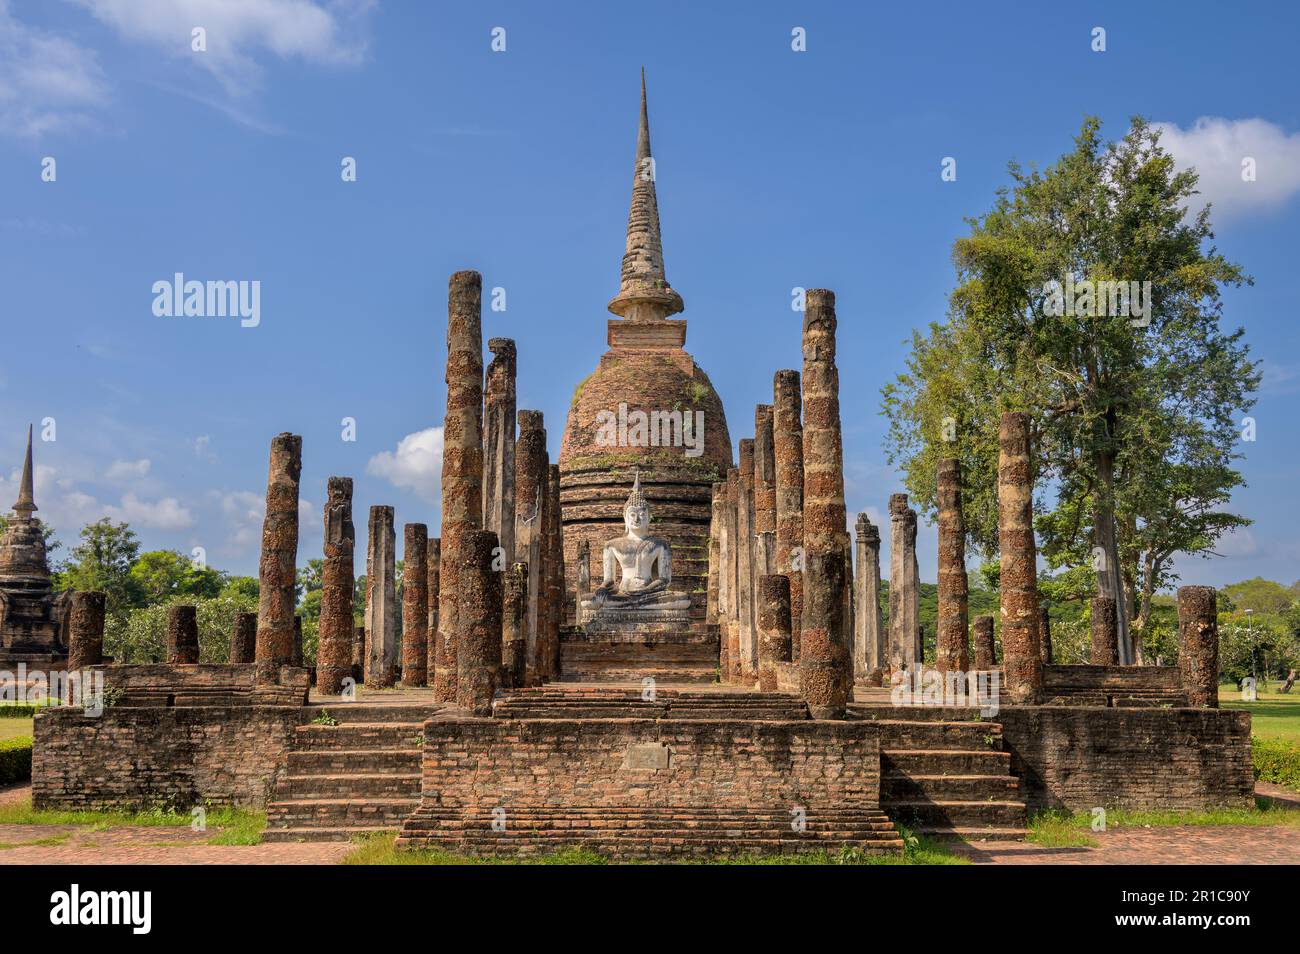 Wat sa si, ou Wat Sra Sri, est un complexe de temples bouddhistes (wat) dans le Parc historique de Sukhothai, province de Sukhothai dans la région nord de la Thaïlande Banque D'Images